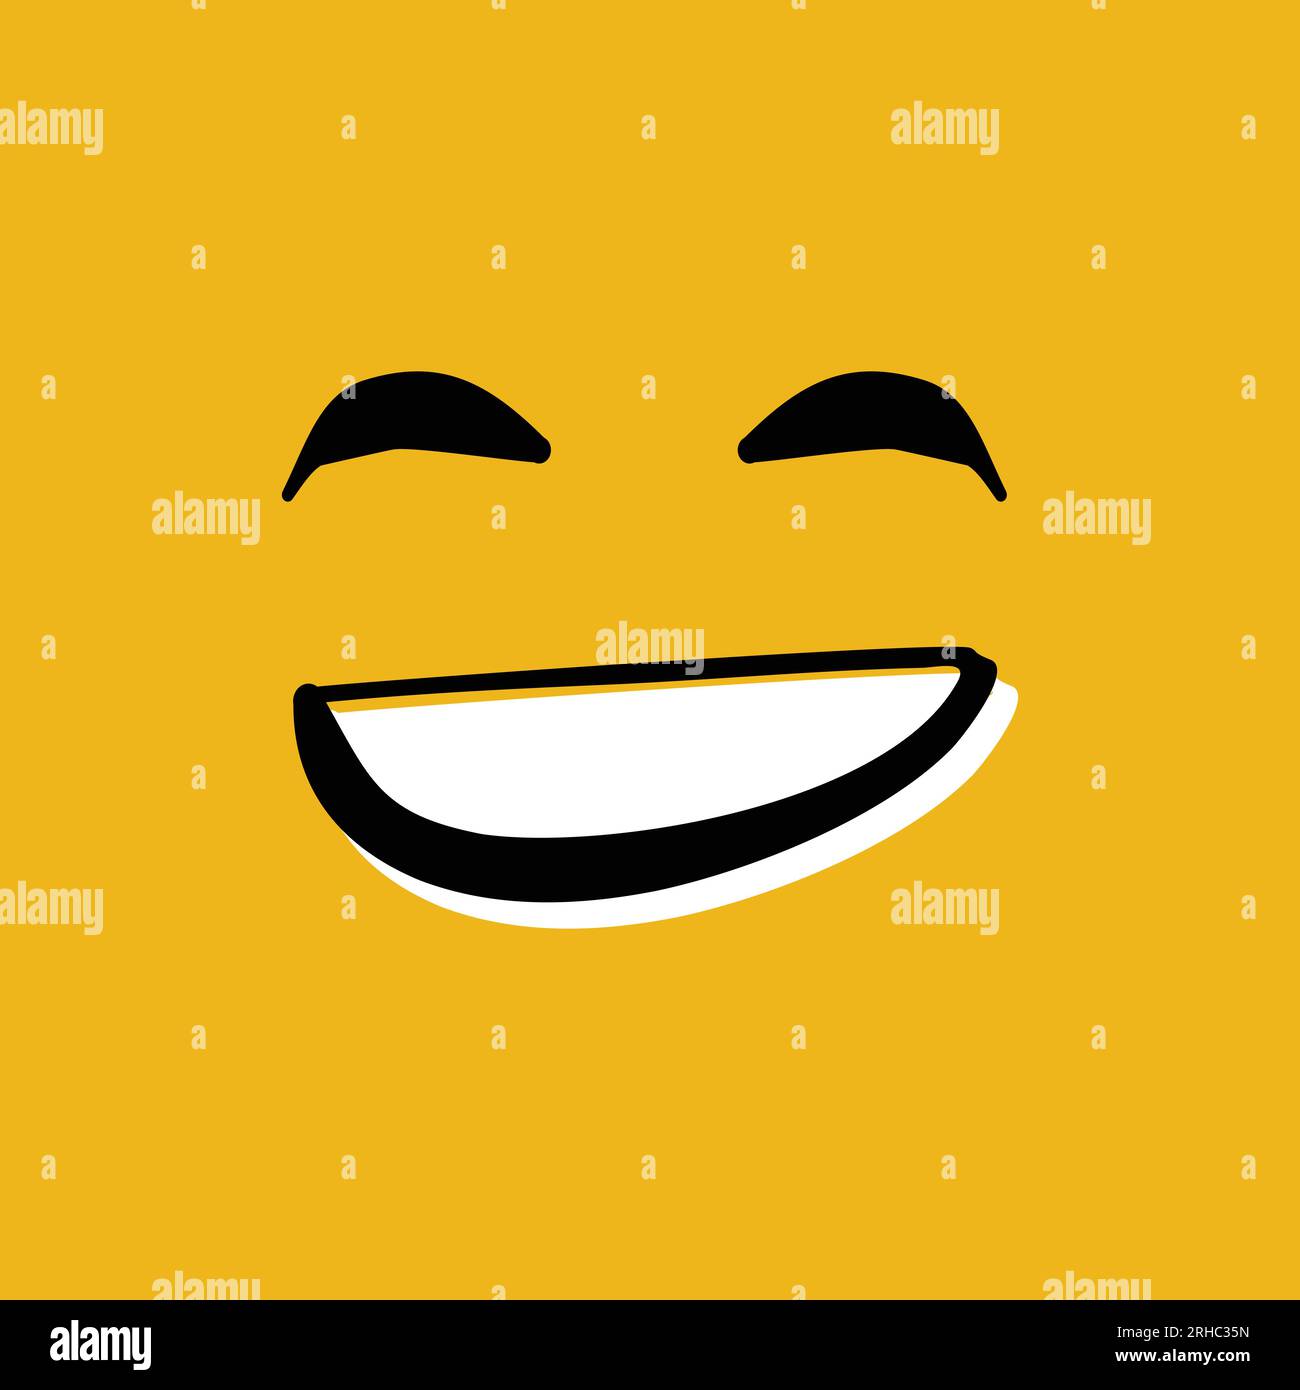 Heureux visage smiley illustration vectorielle dessinée à la main sur fond jaune Illustration de Vecteur